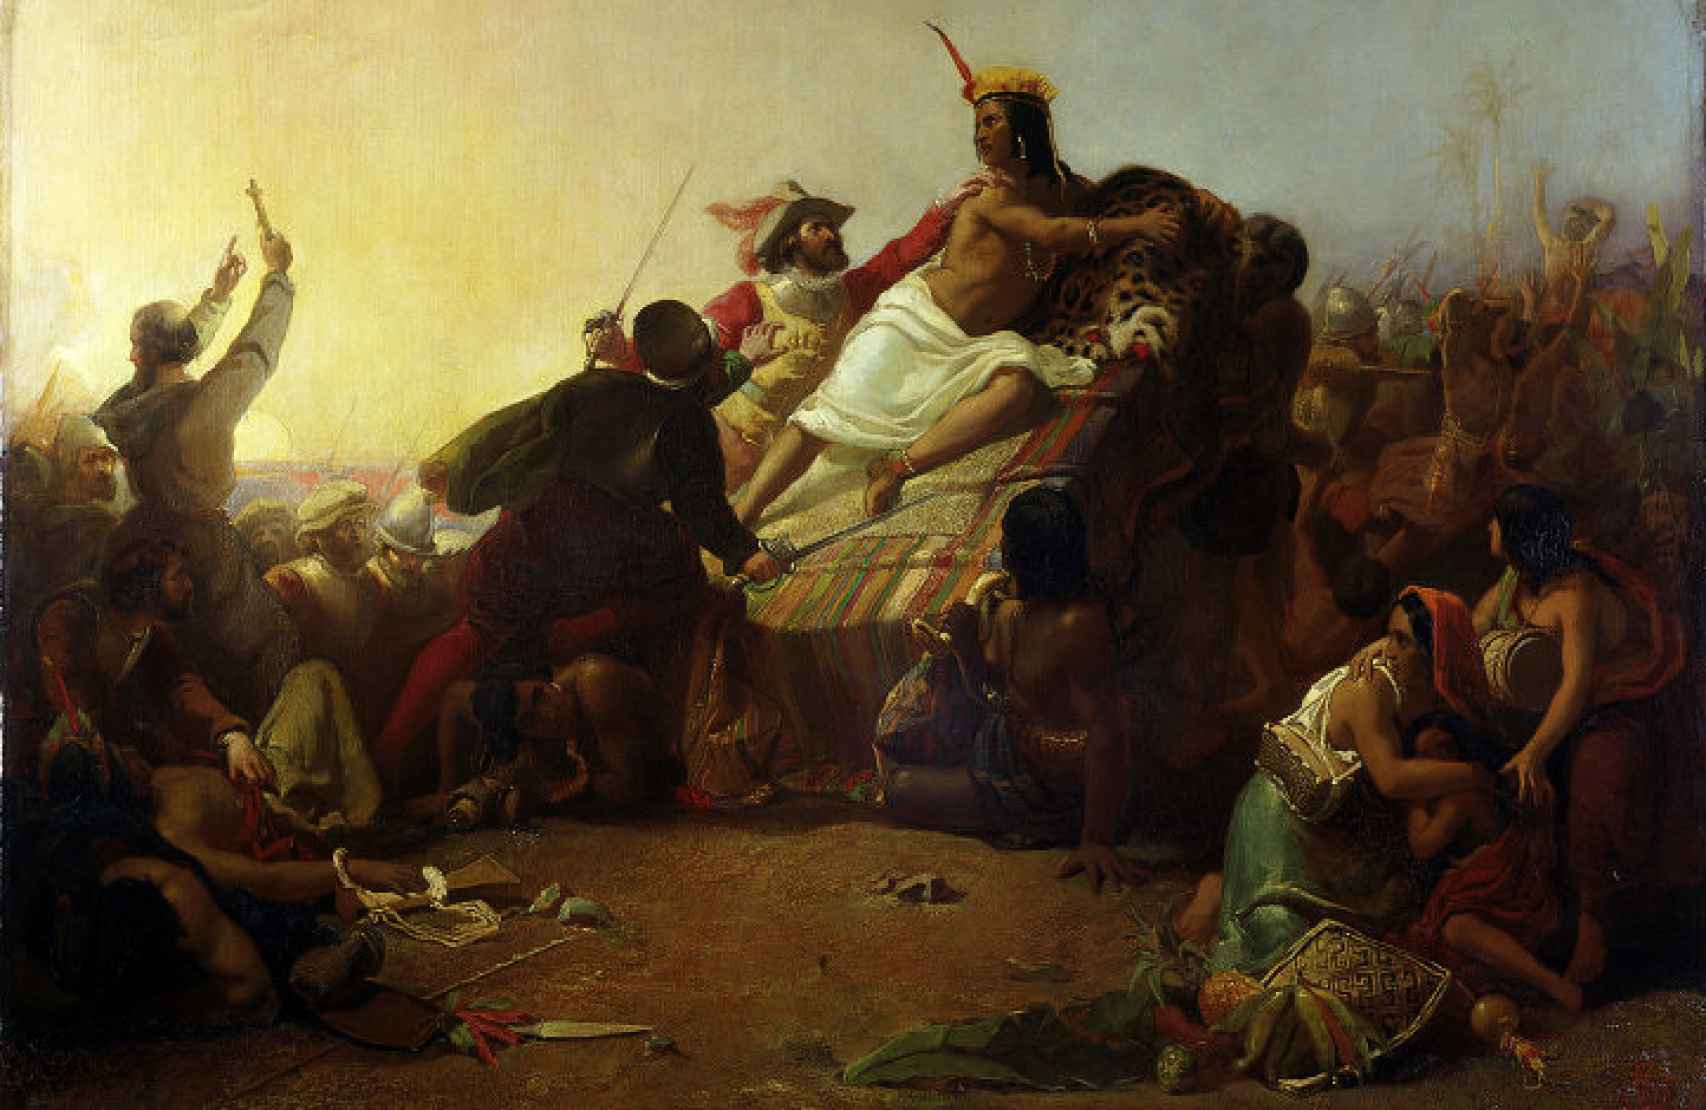 Pintura que representa a Pizarro capturando a Atahualpa (1845).